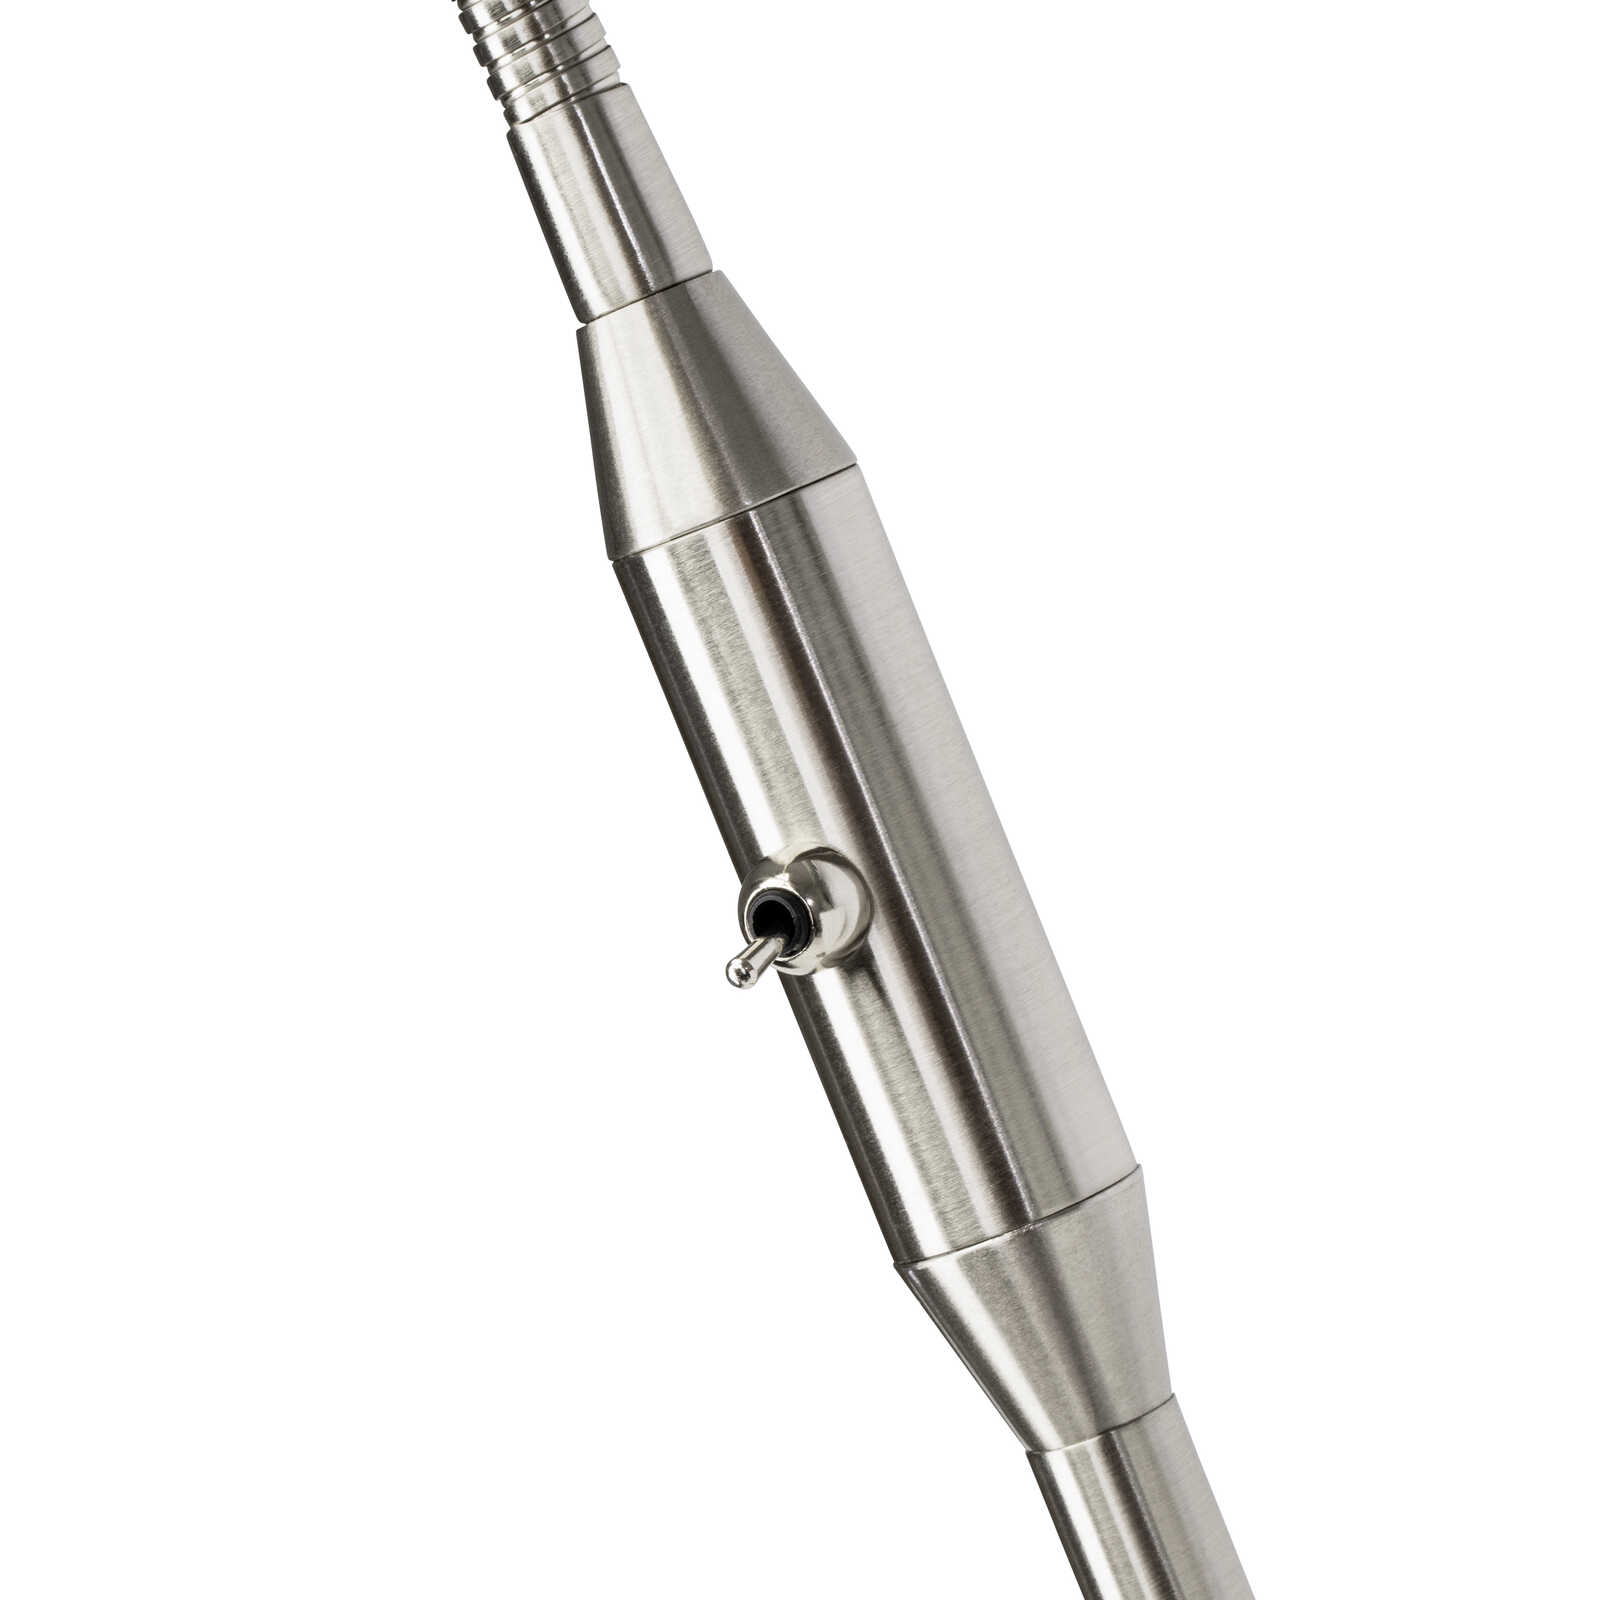             Lámpara de pie de cristal - Malou 1 - Metallic
        